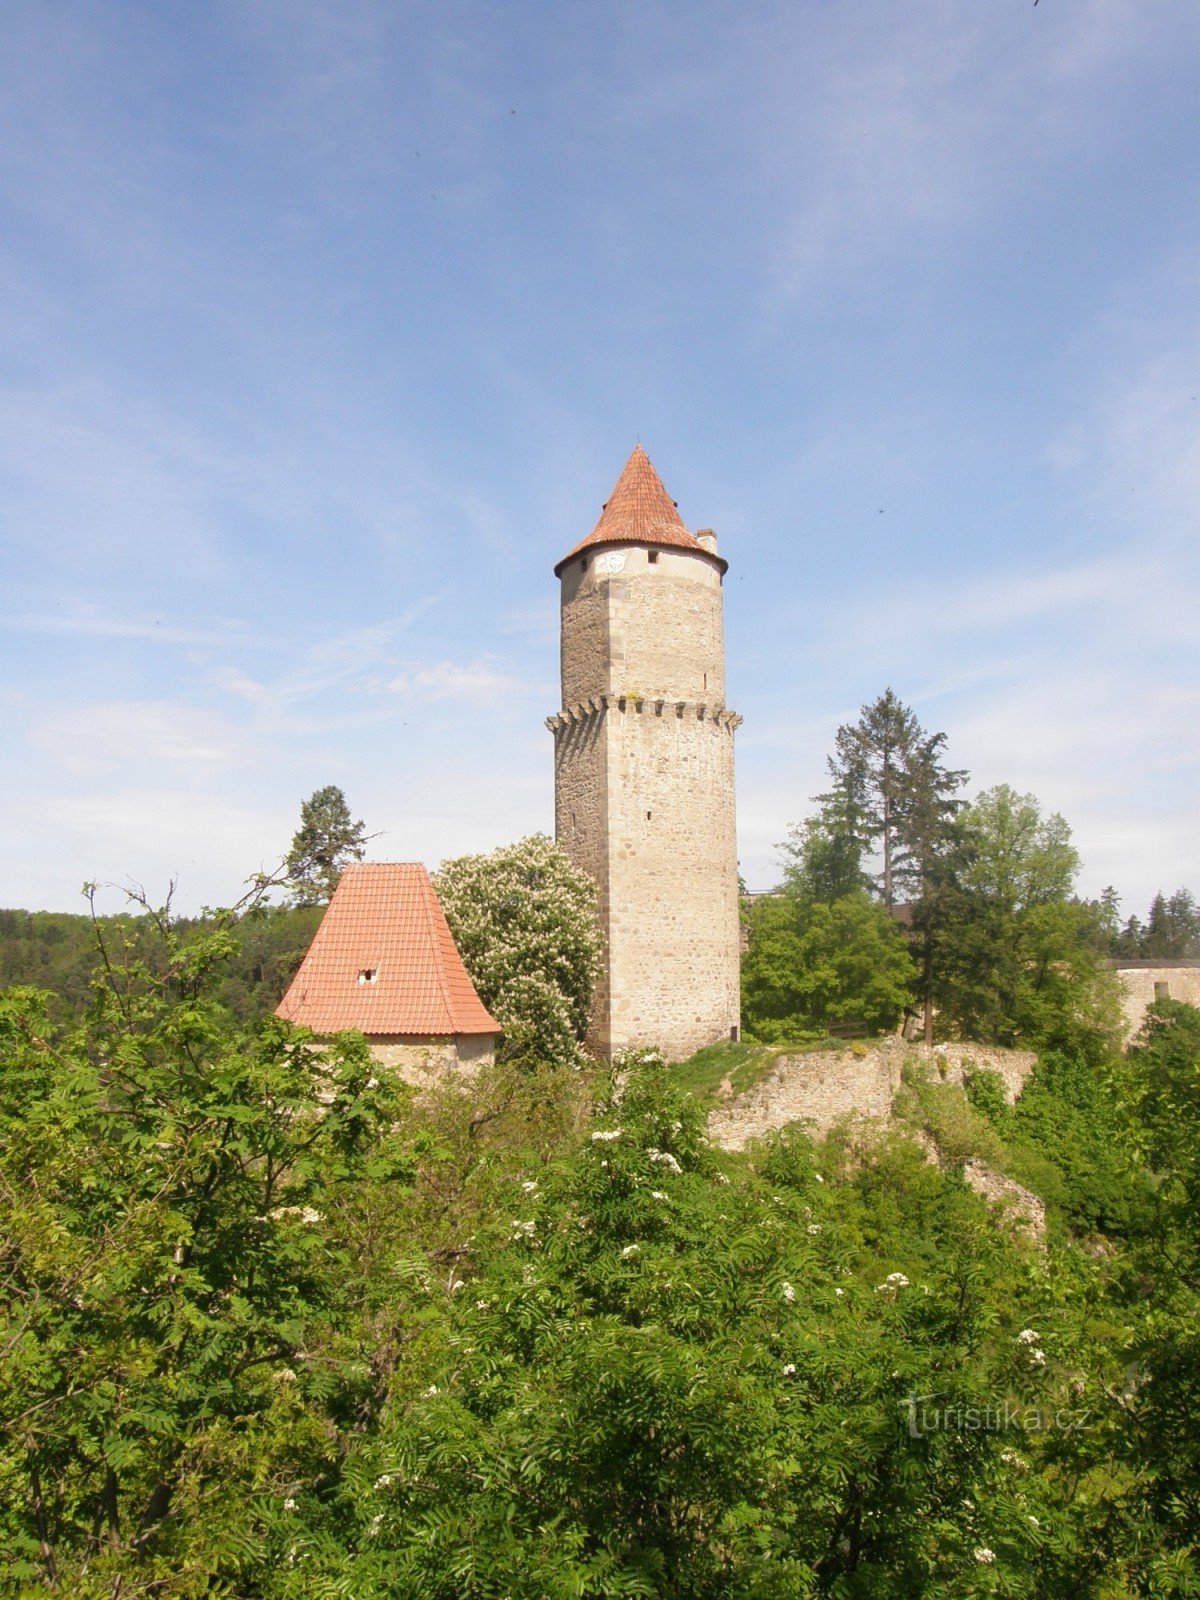 Poarta Písecká și Turnul Hláska aparțin inseparabil unul altuia